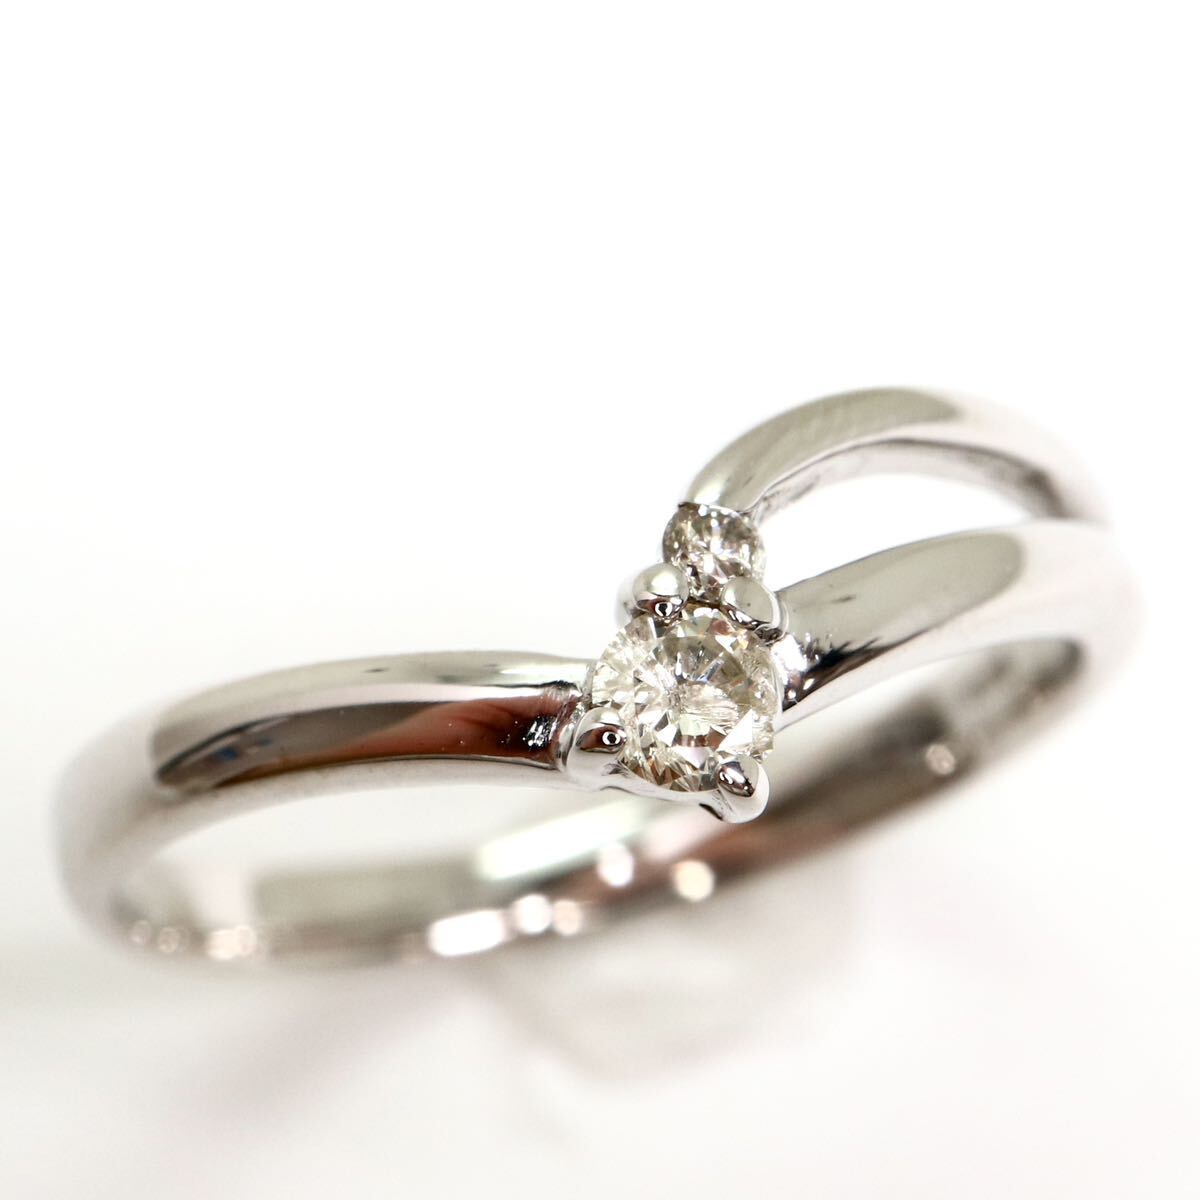 {K18WG натуральный бриллиантовое кольцо }M 2.5g 0.1ct примерно 11 номер ювелирные изделия jewelry ring кольцо diamond EB4/EB4